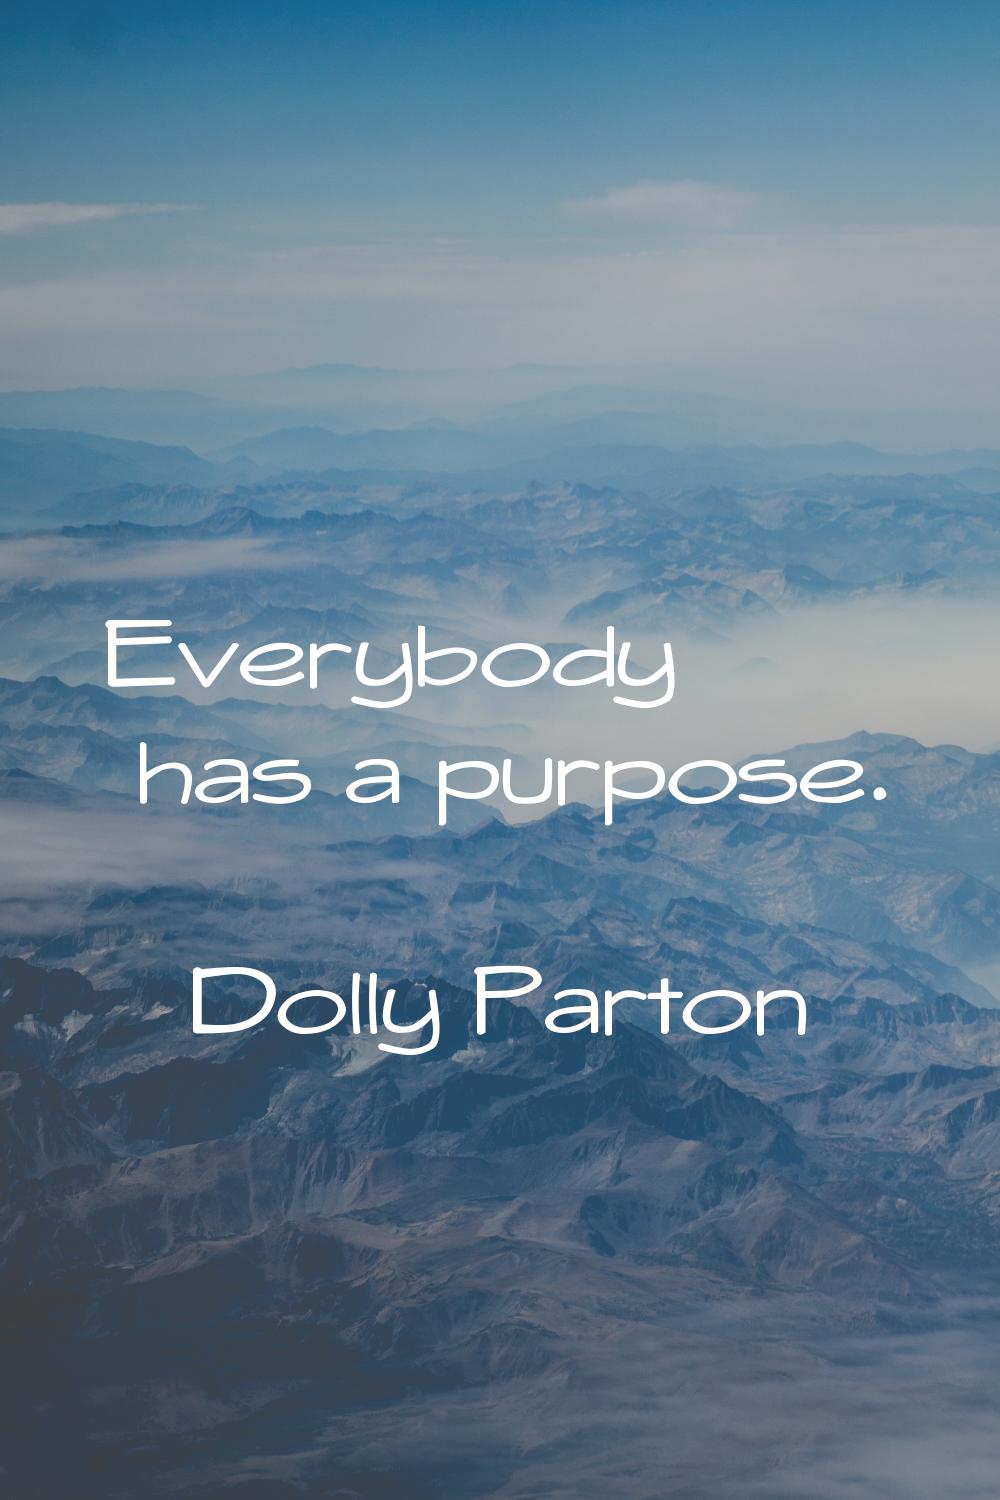 Everybody has a purpose.